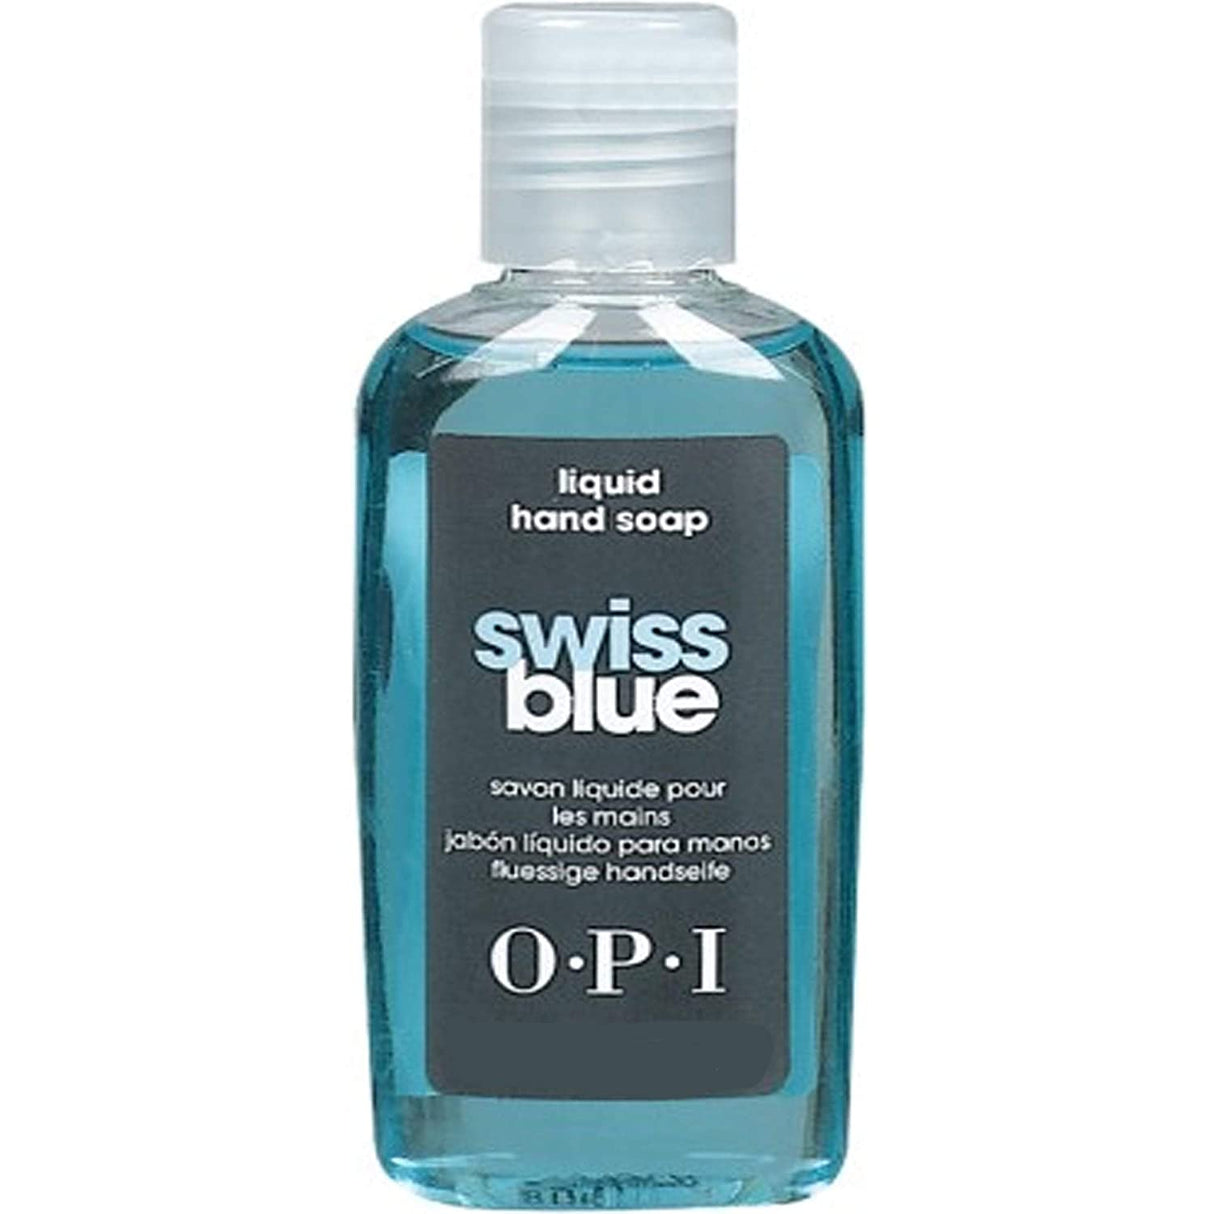 OPI Swiss Blue Liquid Hand Soap (27ml)